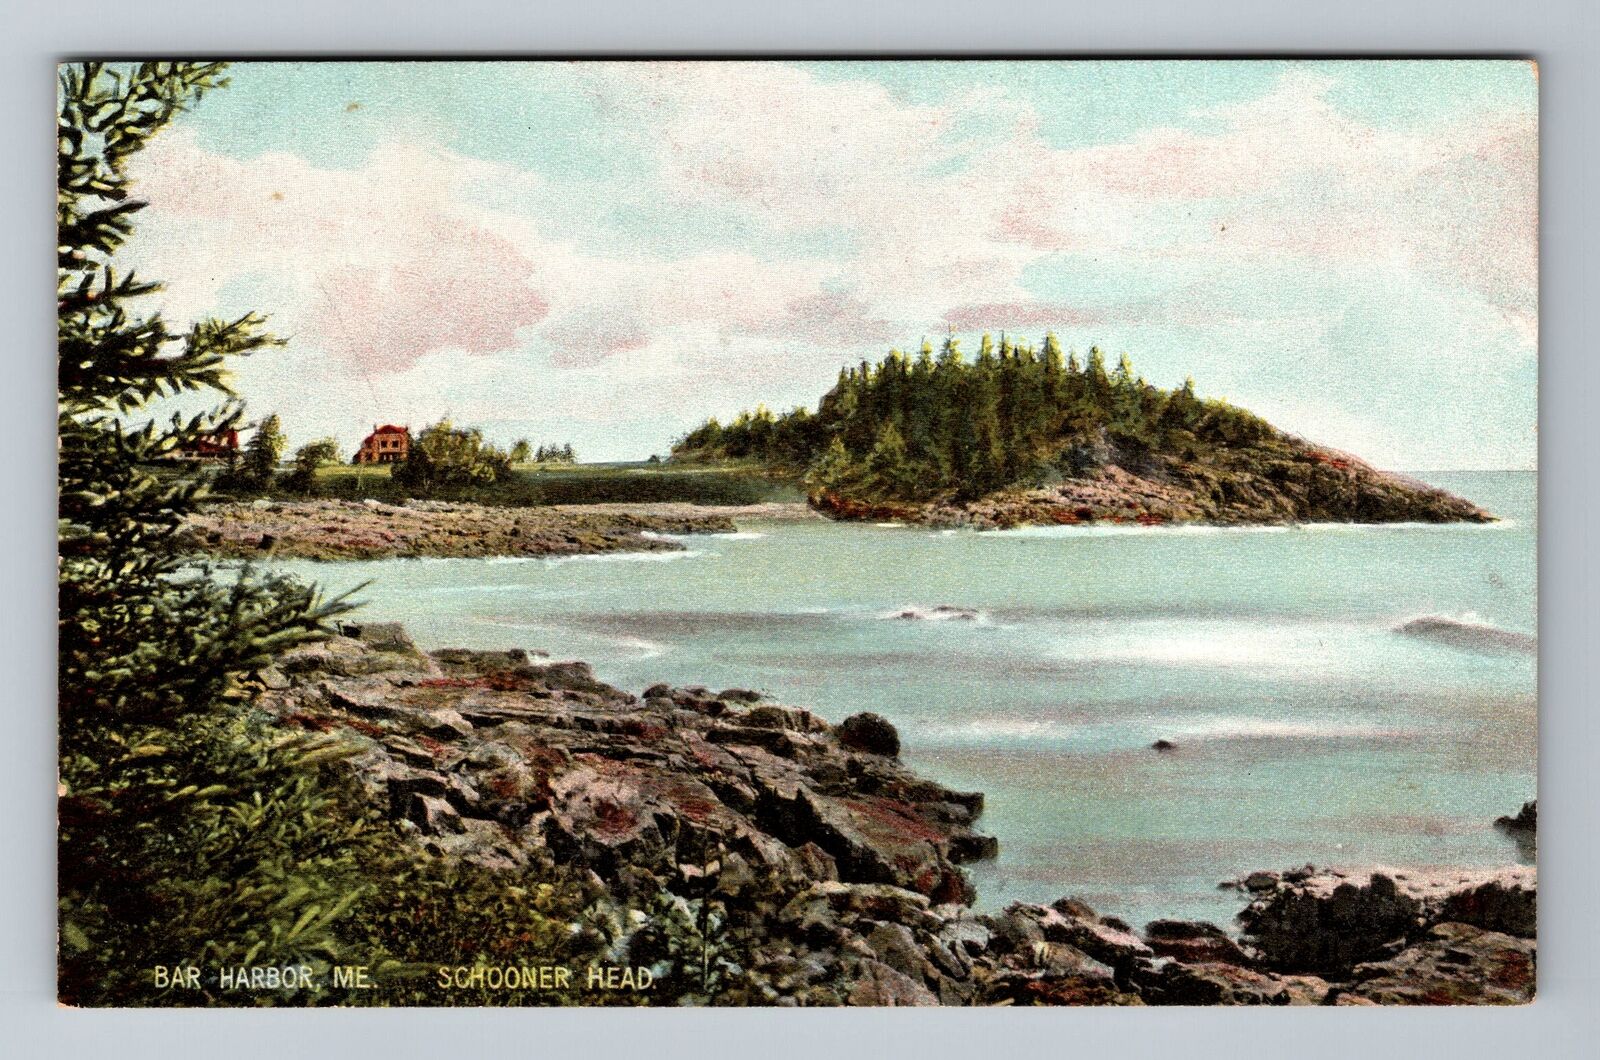 Bar Harbor ME-Maine, Schooner Head Vintage Souvenir Postcard